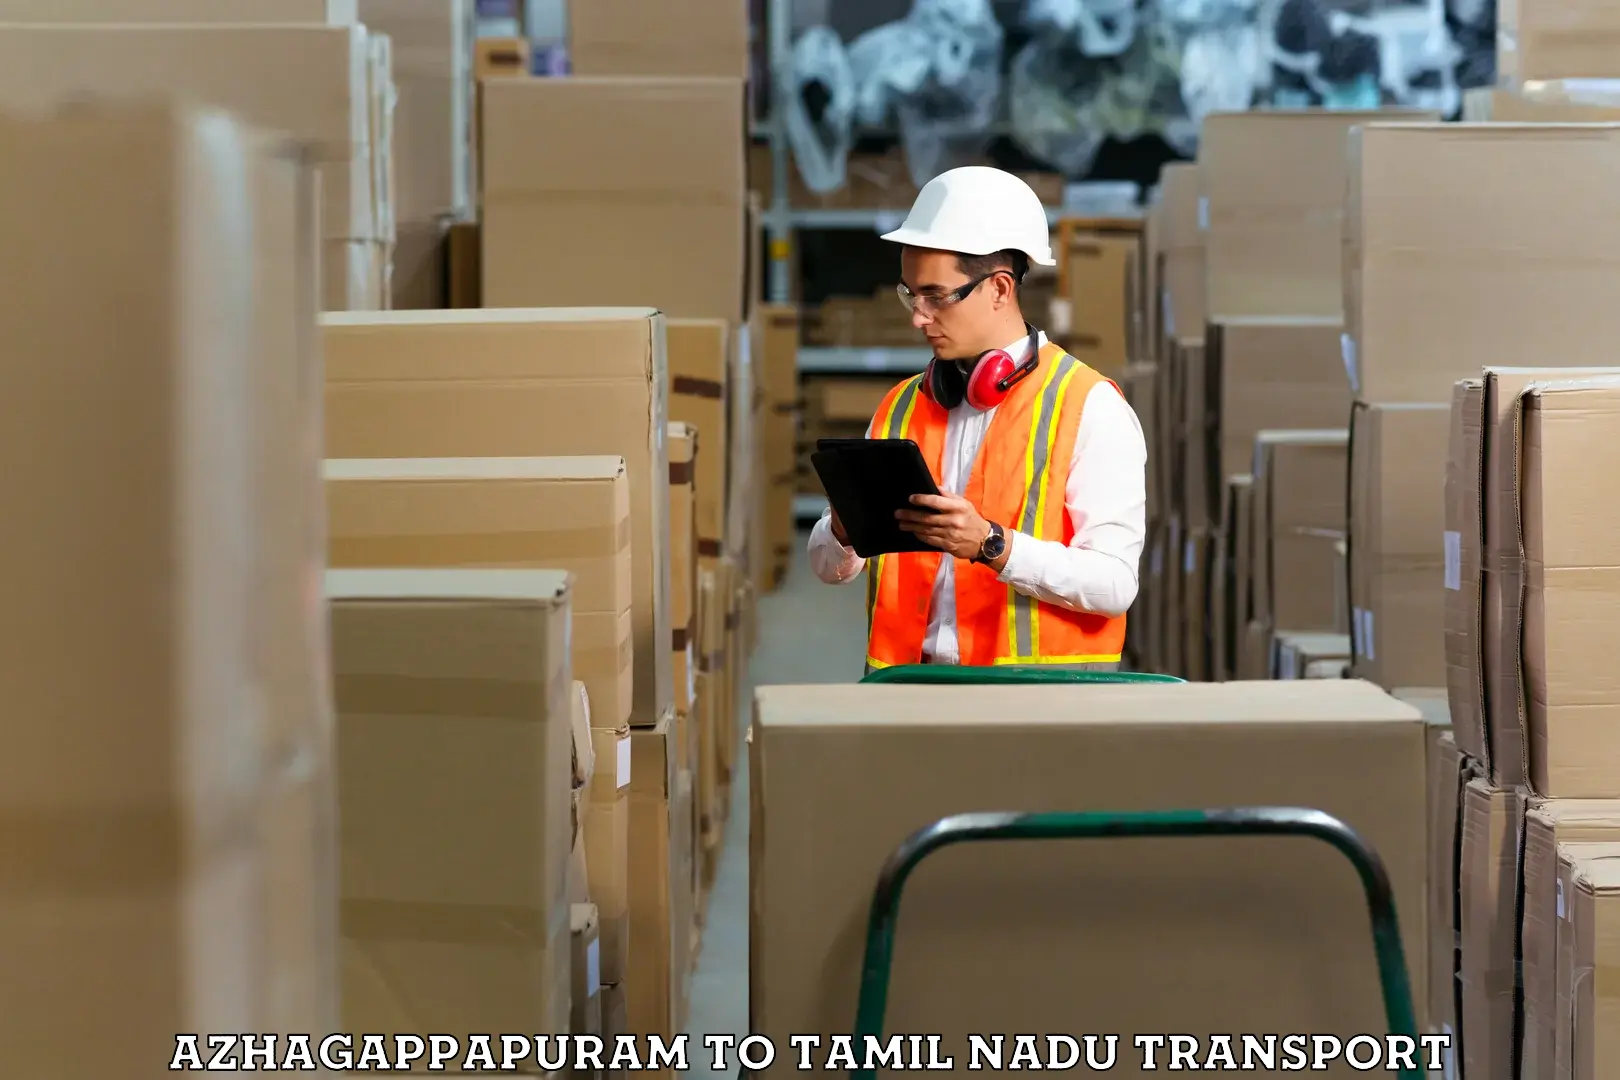 Daily parcel service transport Azhagappapuram to Anthiyur